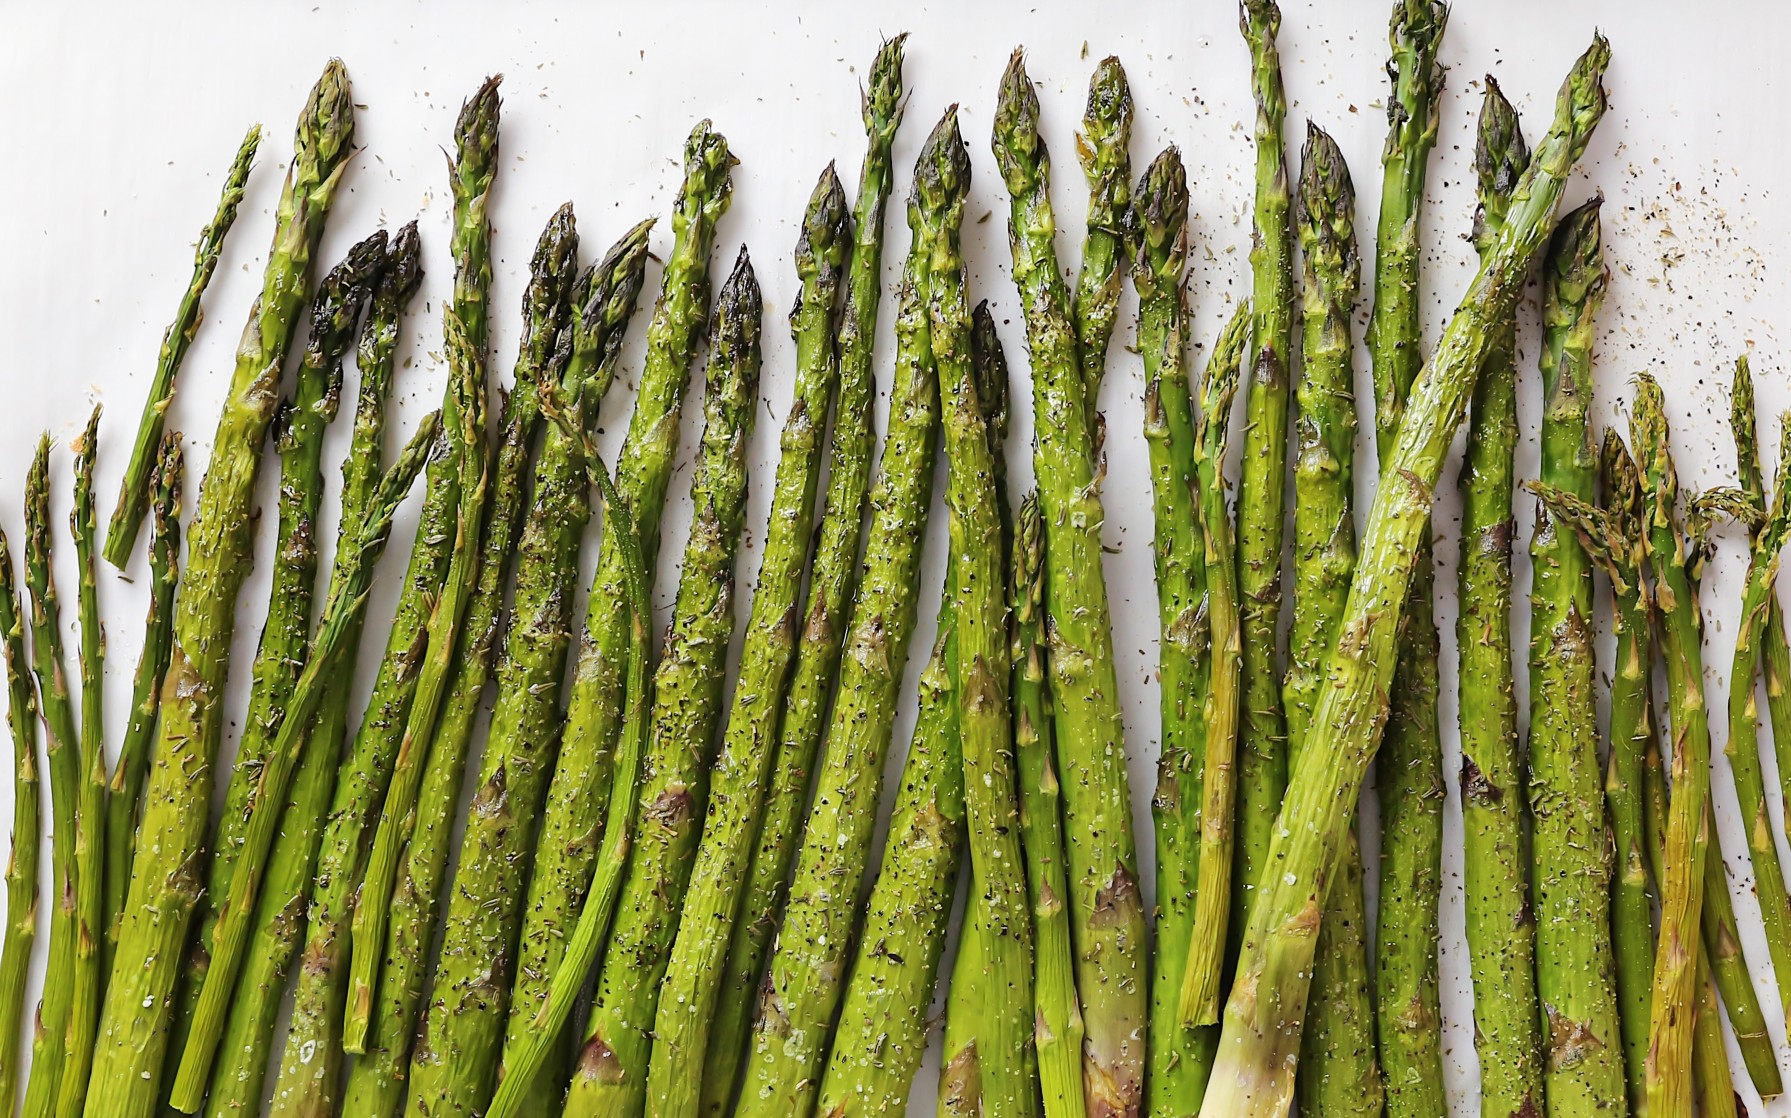 roasted asparagus - 5 Delicious Ways to Enjoy Asparagus